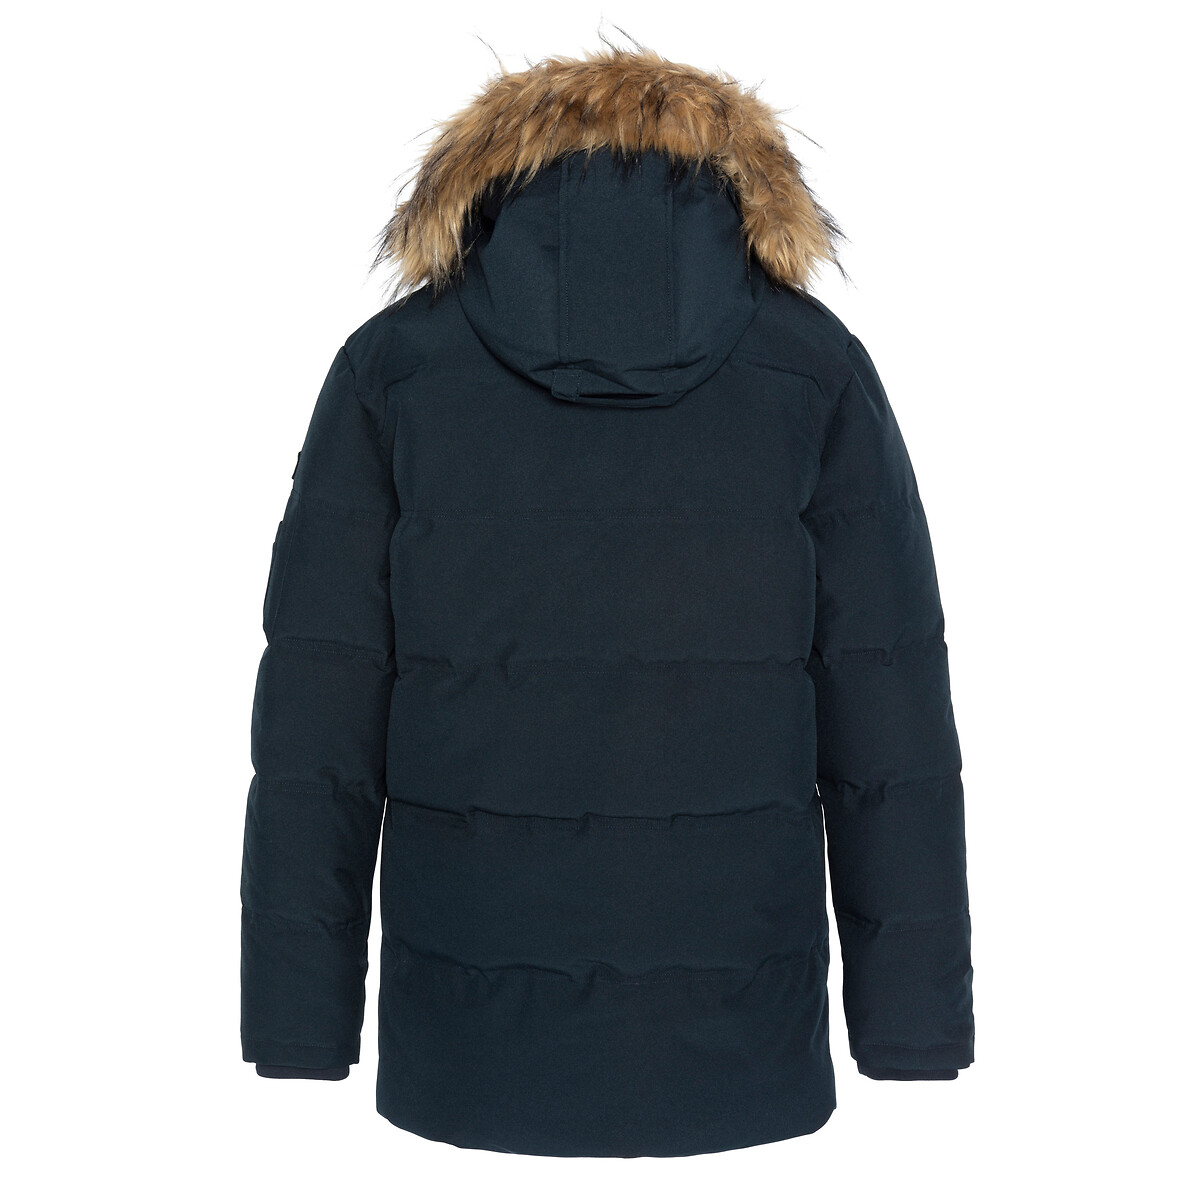 Куртка стеганая средней длины с пришитым капюшоном зимняя  XL синий LaRedoute, размер XL - фото 4